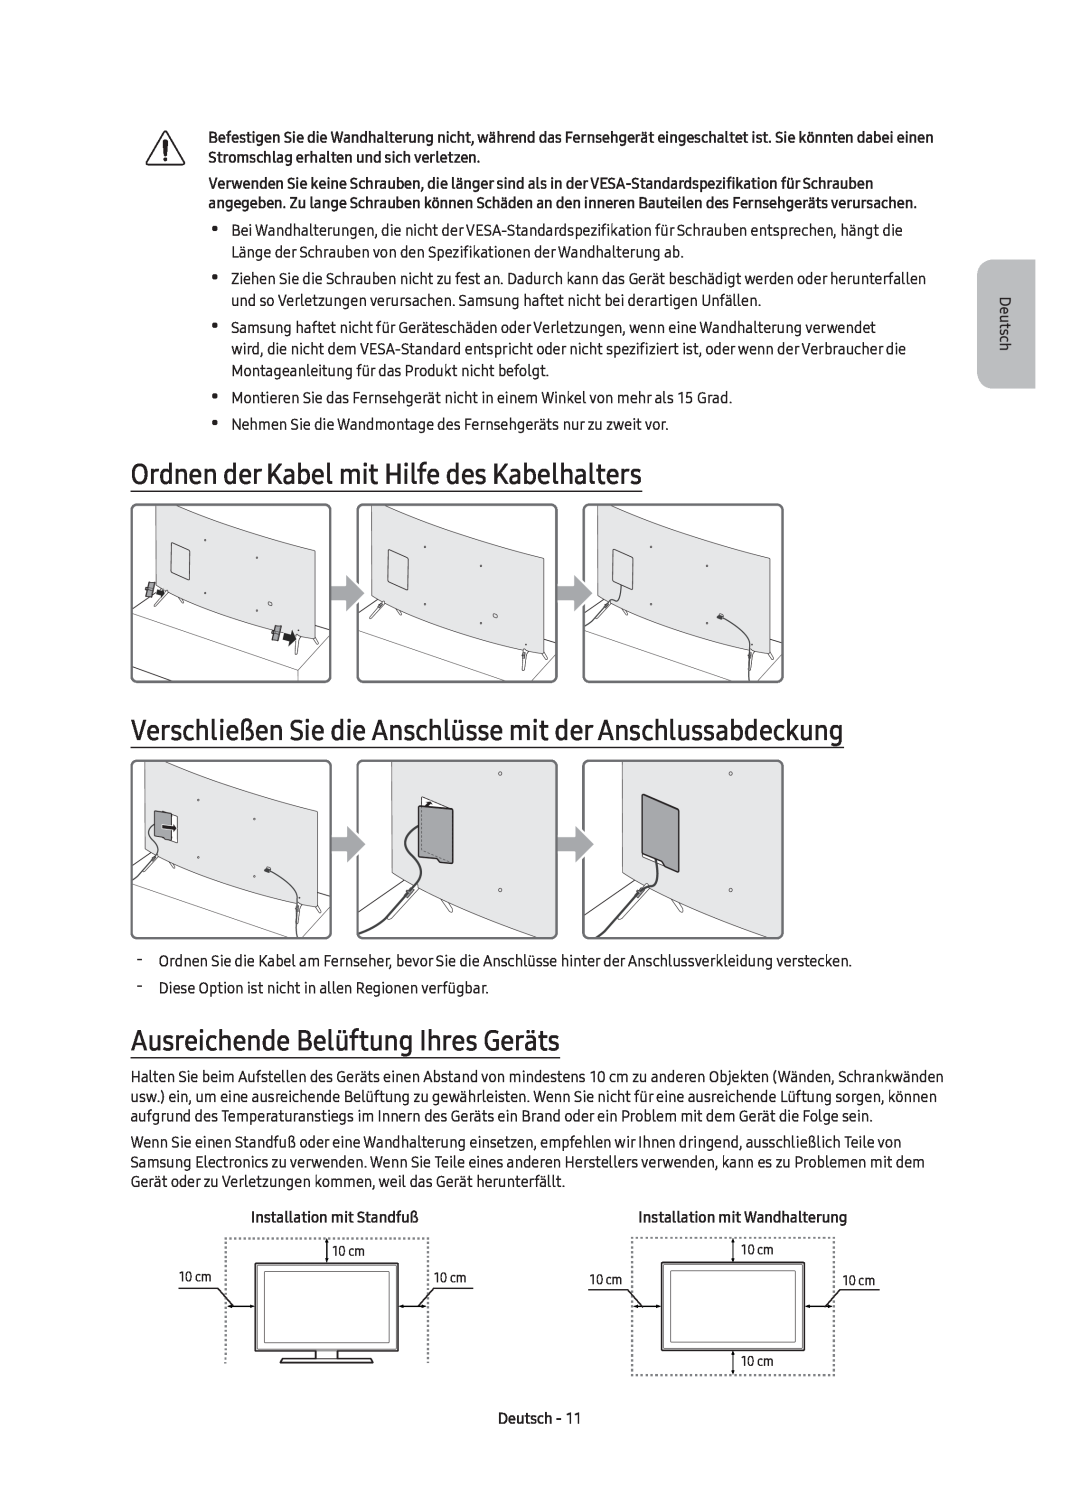 Samsung UE65KS7590UXZG manual Ordnen der Kabel mit Hilfe des Kabelhalters, Ausreichende Belüftung Ihres Geräts, Deutsch 